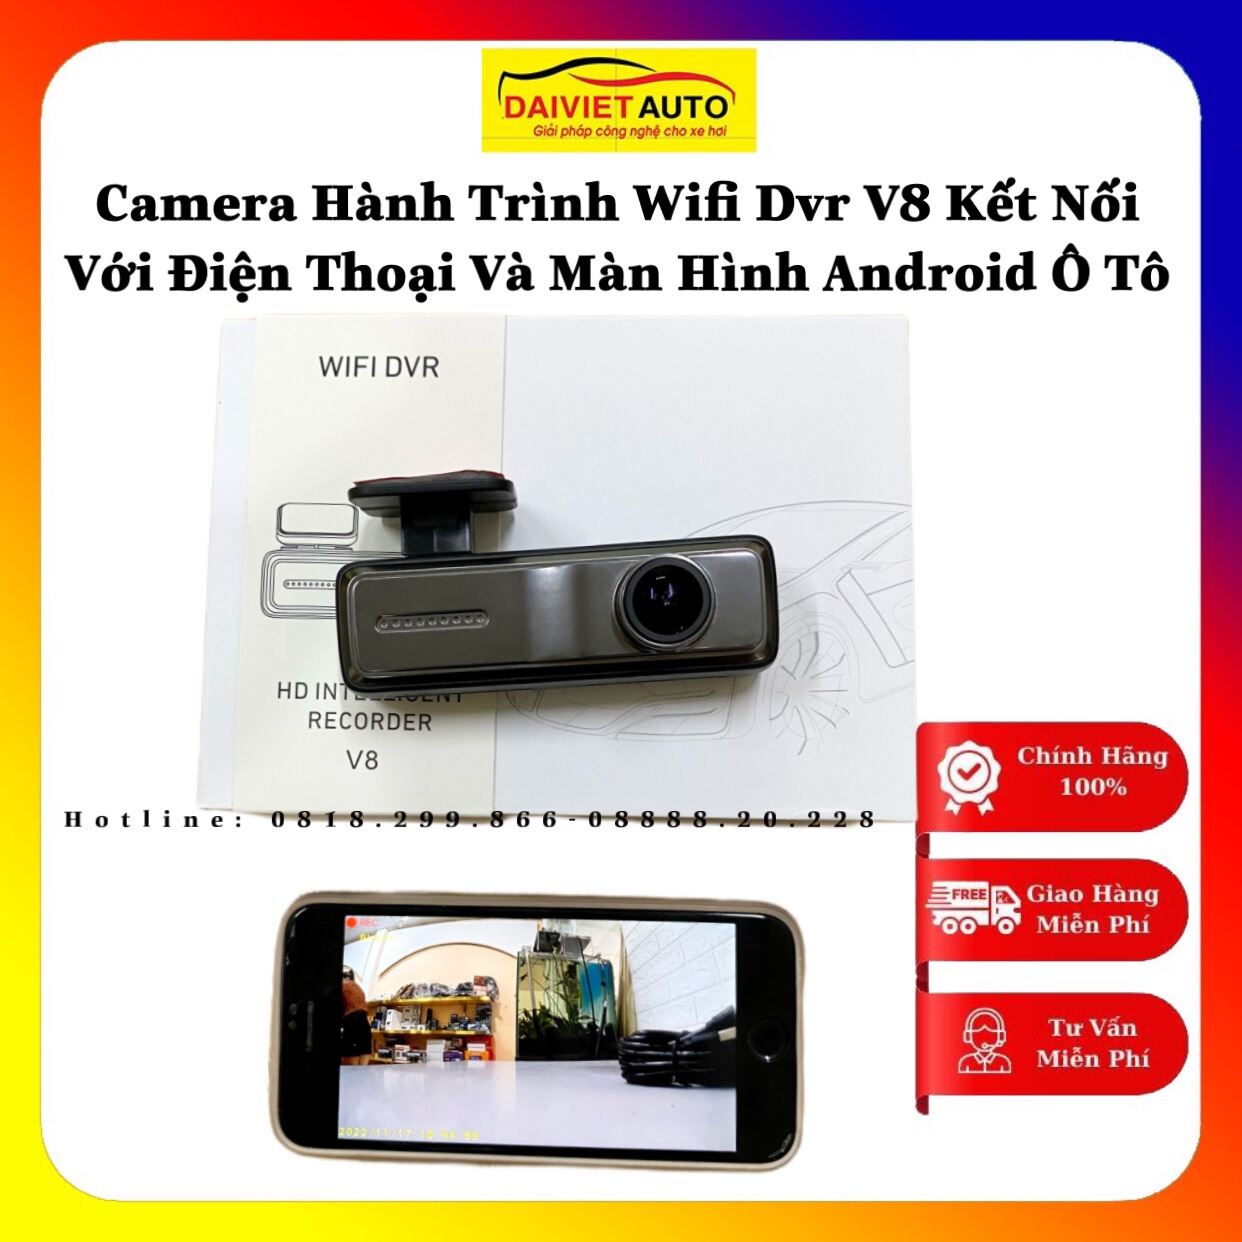 Camera Hành Trình WIFI DVR V8 Kết Nối Với Điện Thoại Và Màn Hình Android Ô